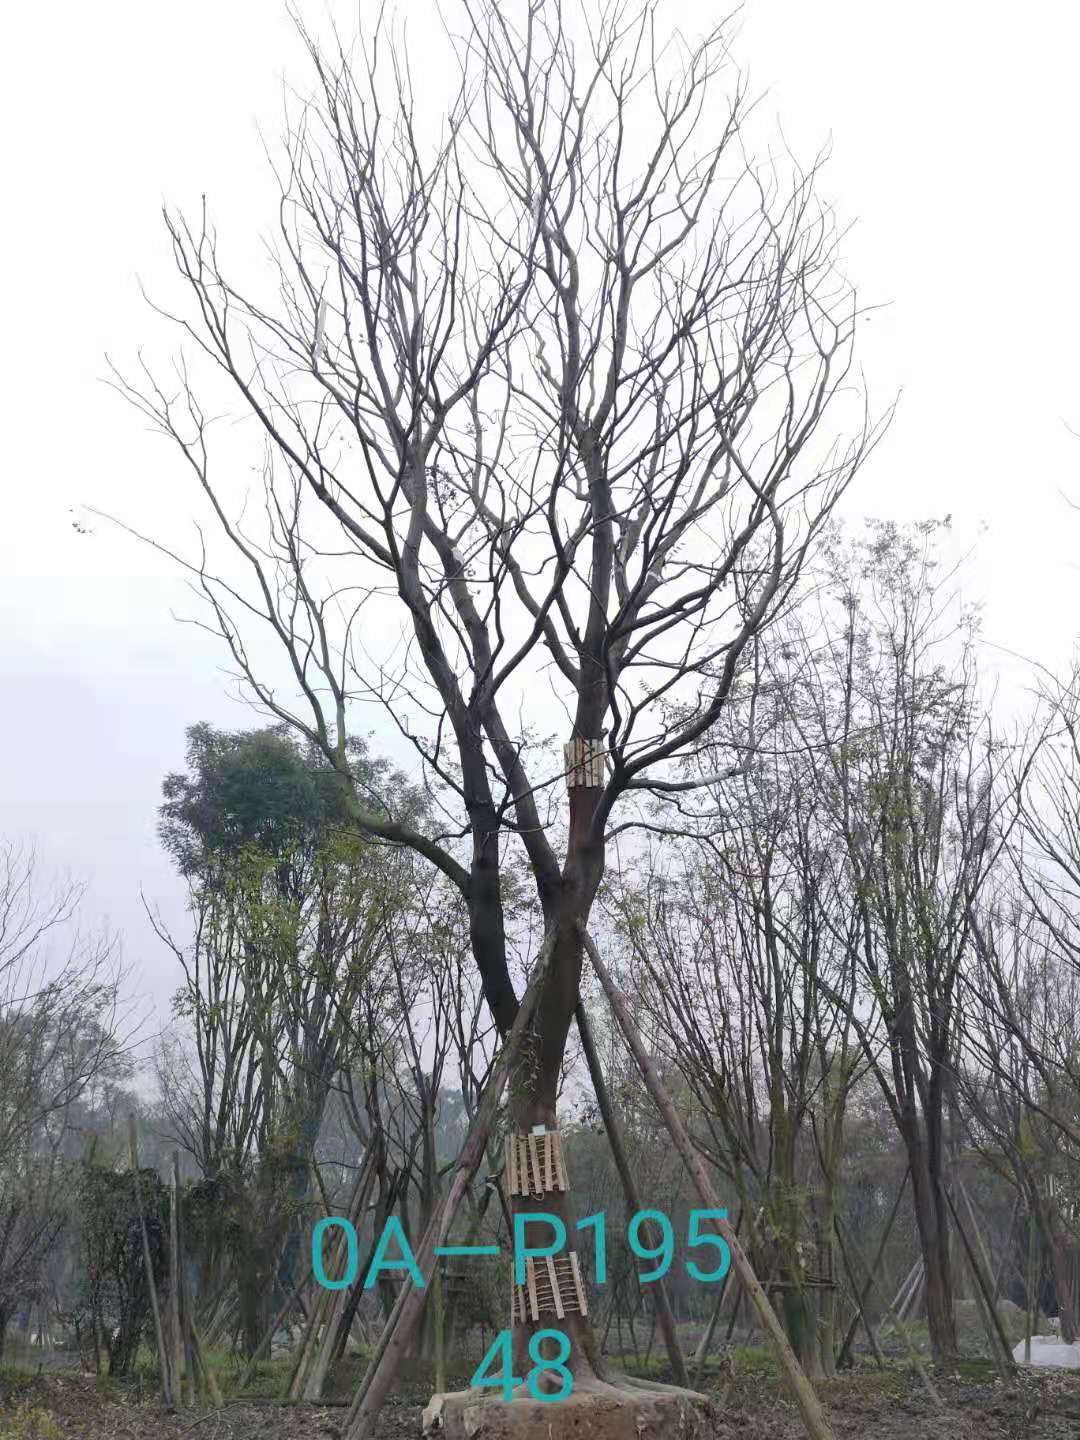 四川省-自贡市苗木基地直销47-48公分树形优美-树姿端庄的精品朴树